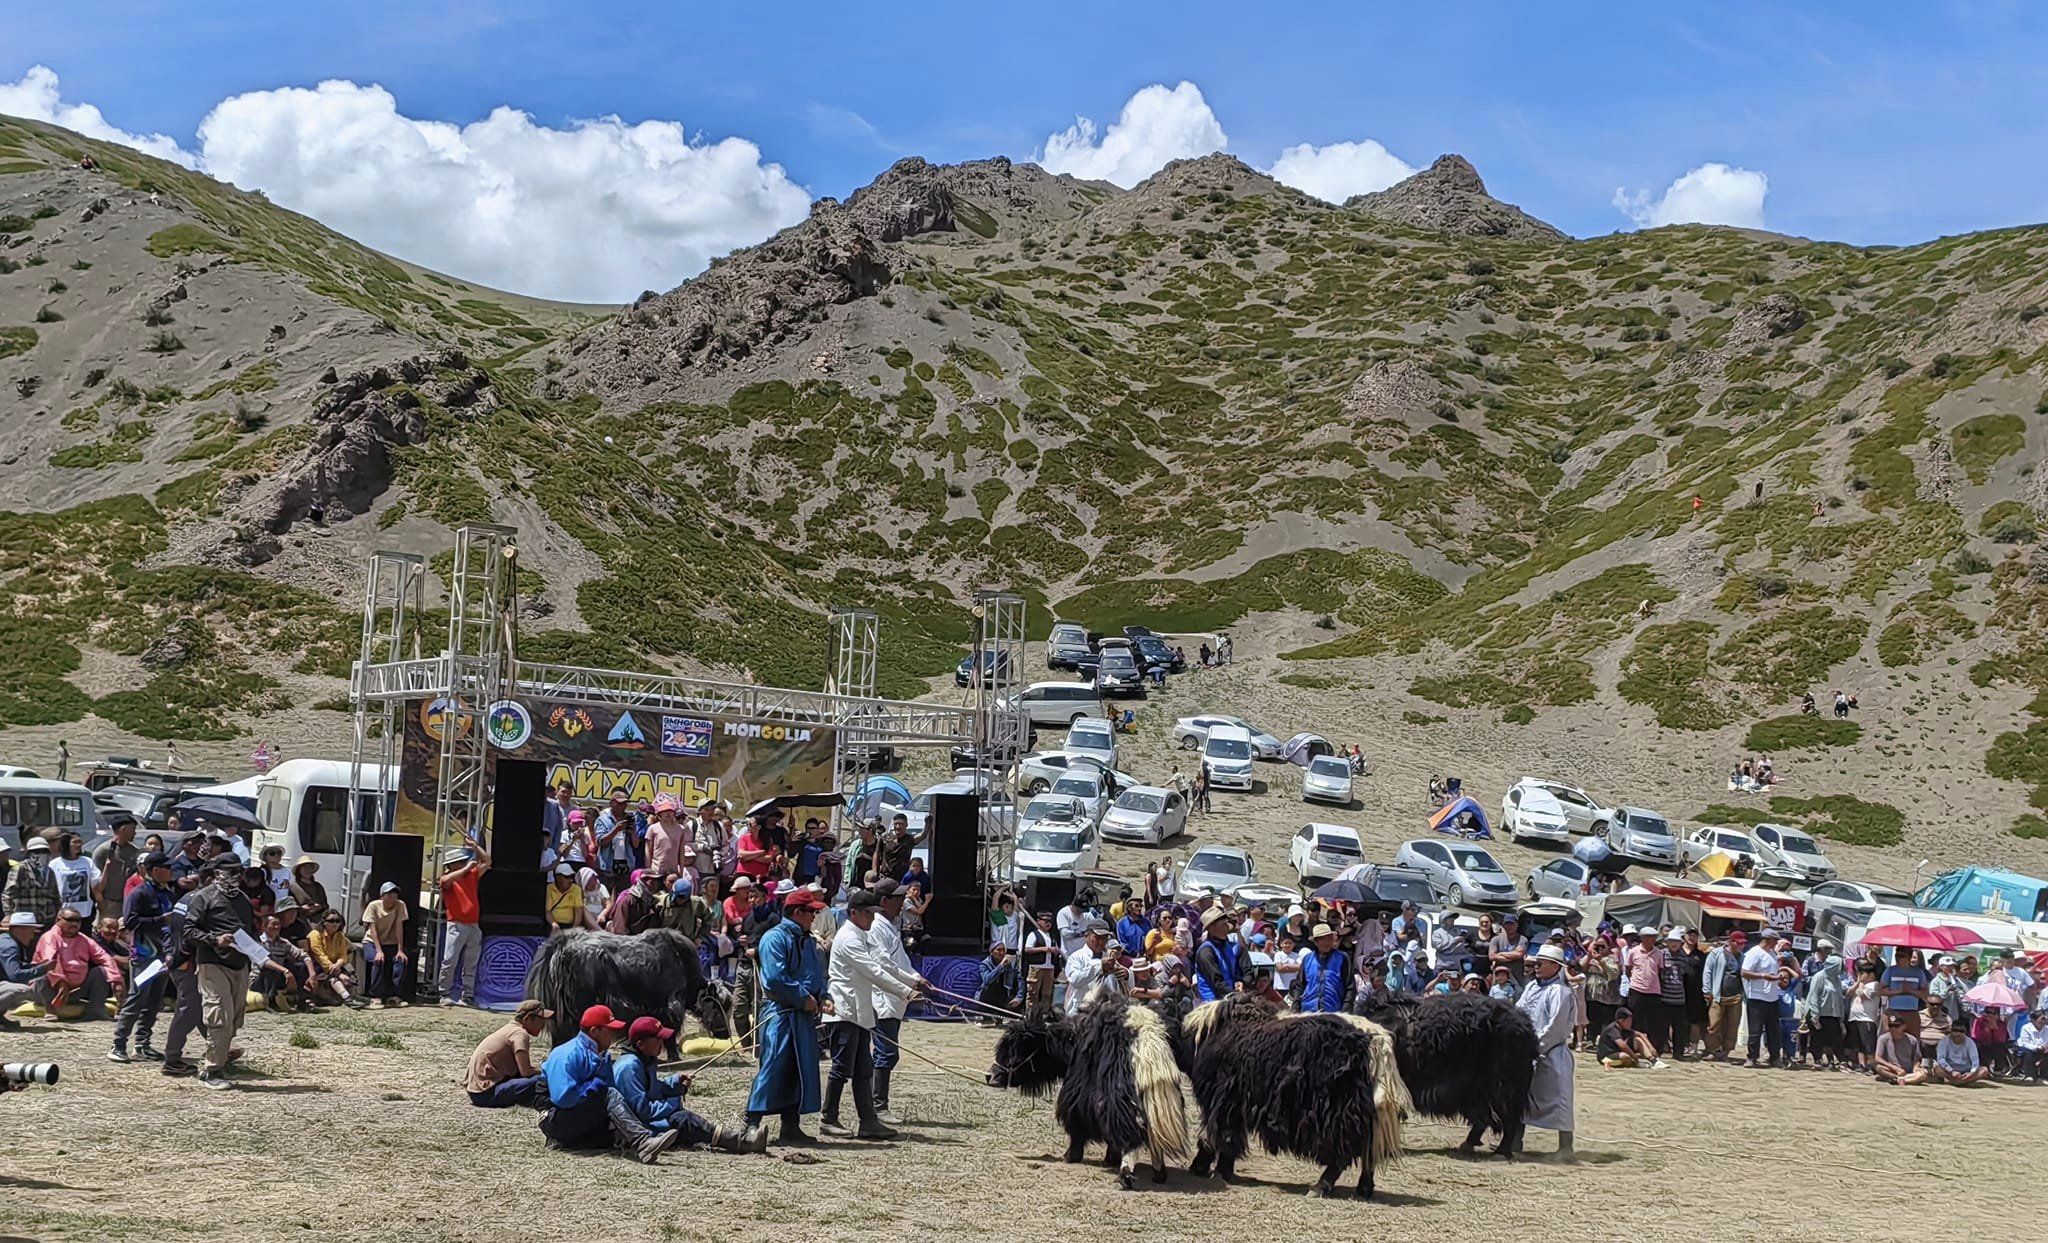 Yak festival Mongolia